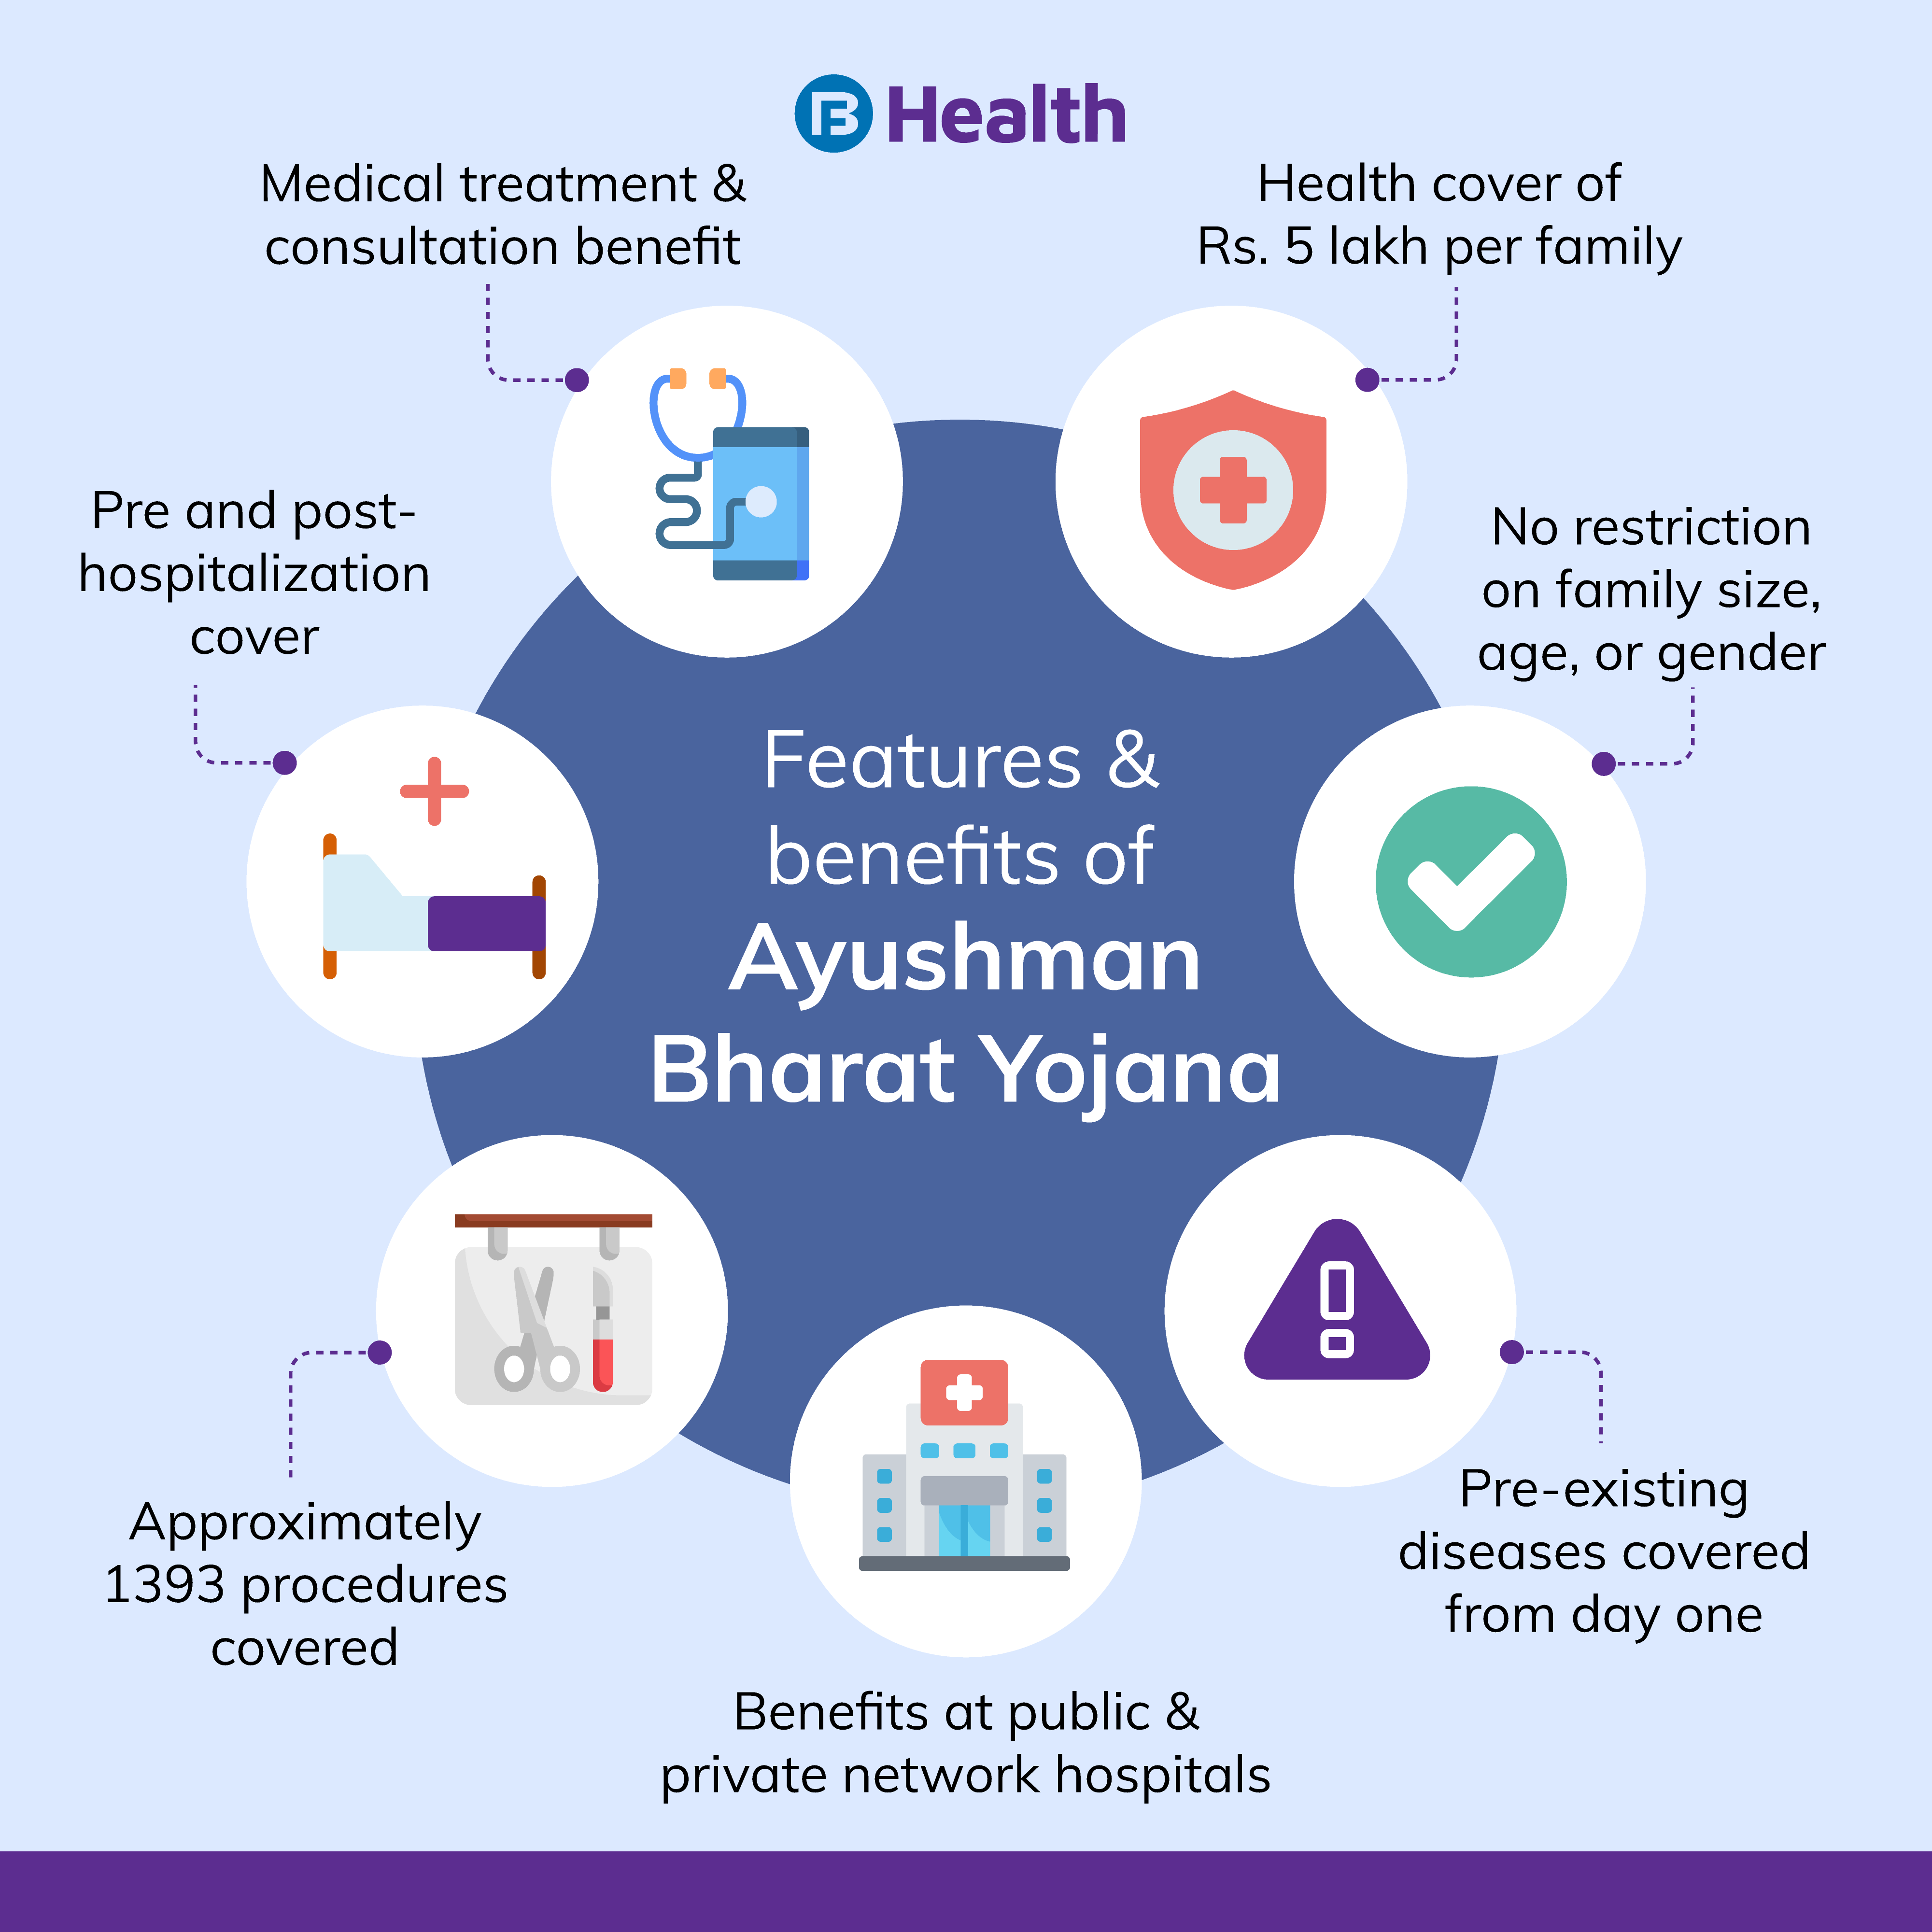 Features and Benefits of Ayushman Bharat Yojana